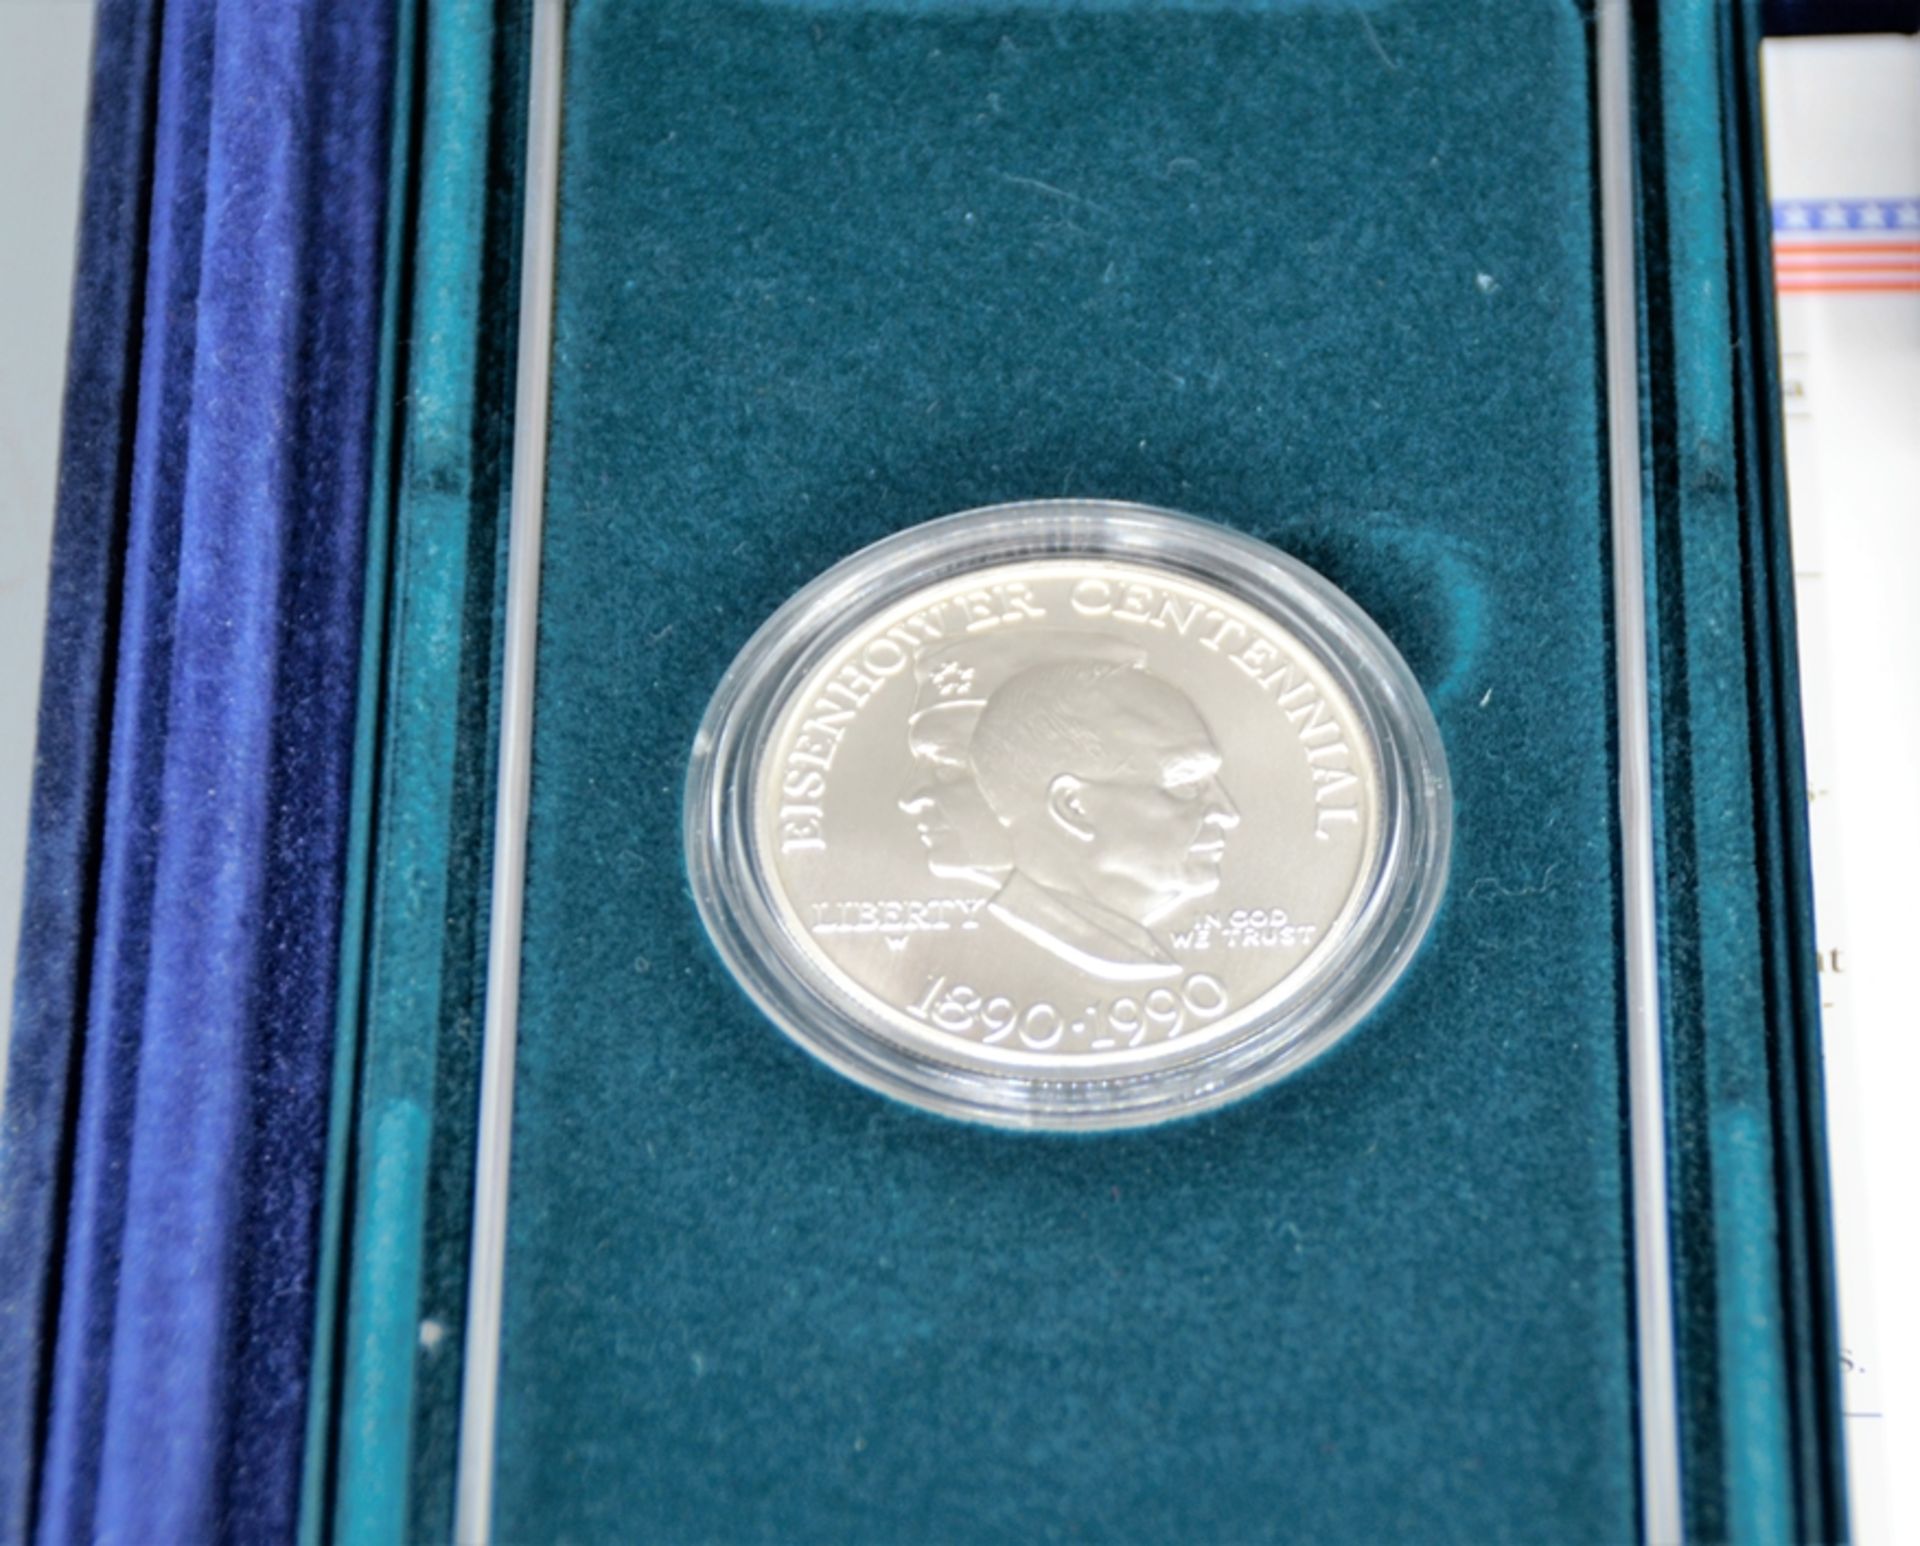 Sammlung die offiziellen Gedenkmünzen der Vereinigten Staaten von Amerika, darunter 1 Dollar 1991 U - Bild 4 aus 4